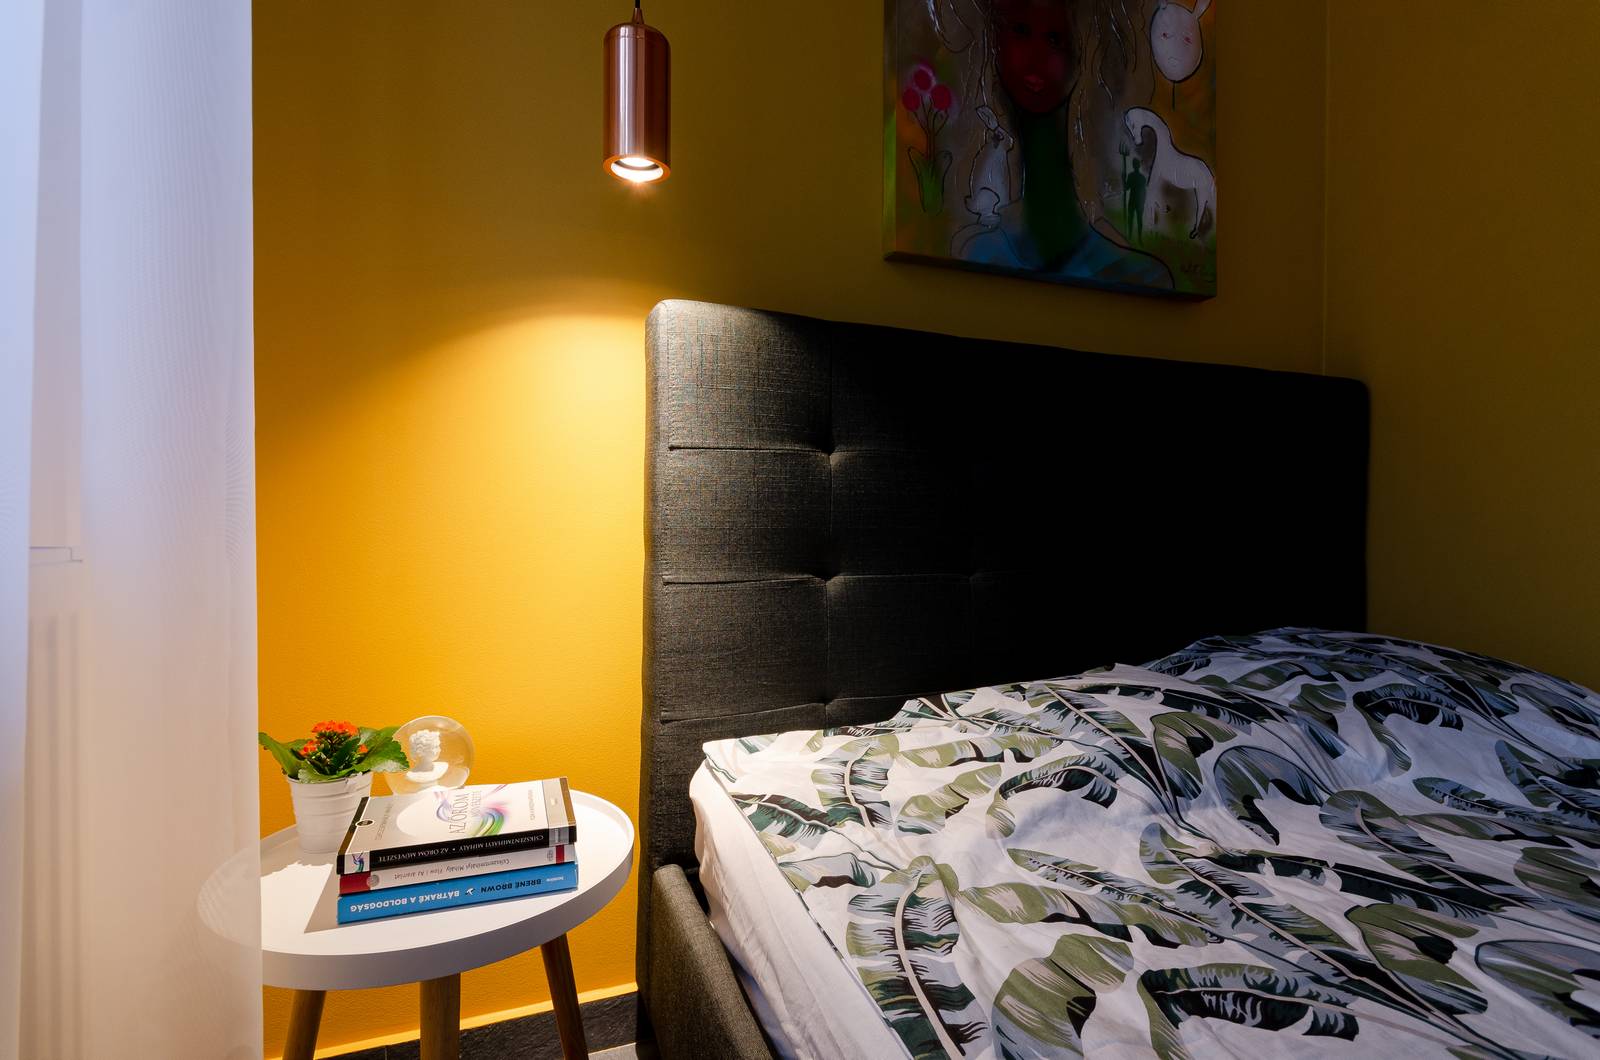 Tấm chăn mỏng hoa văn lá chuối, ánh sáng ấm áp từ đèn thả trần, phụ kiện trang trí trên táp đầu giường và bức tranh cô gái cho không gian vẻ đẹp rất 'art'.